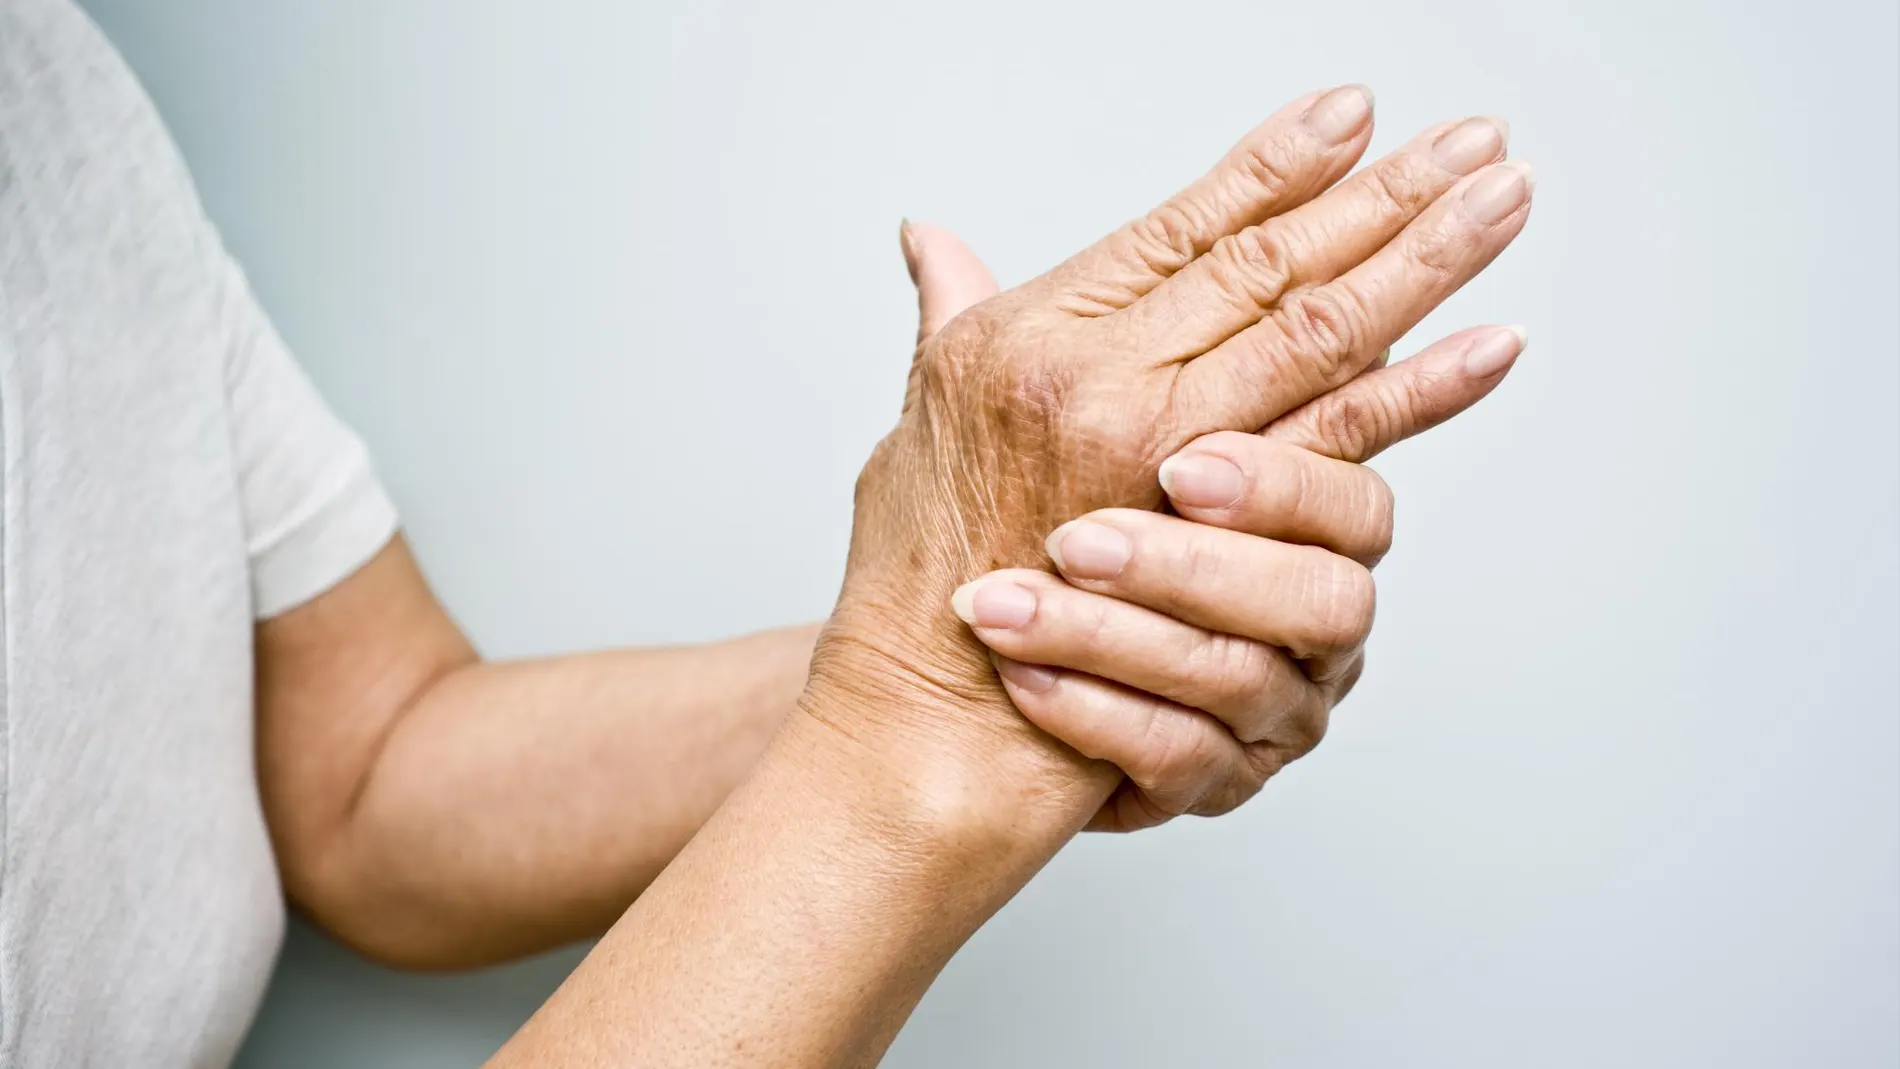 Sólo 15 días para detectar y tratar la artritis reumatoide